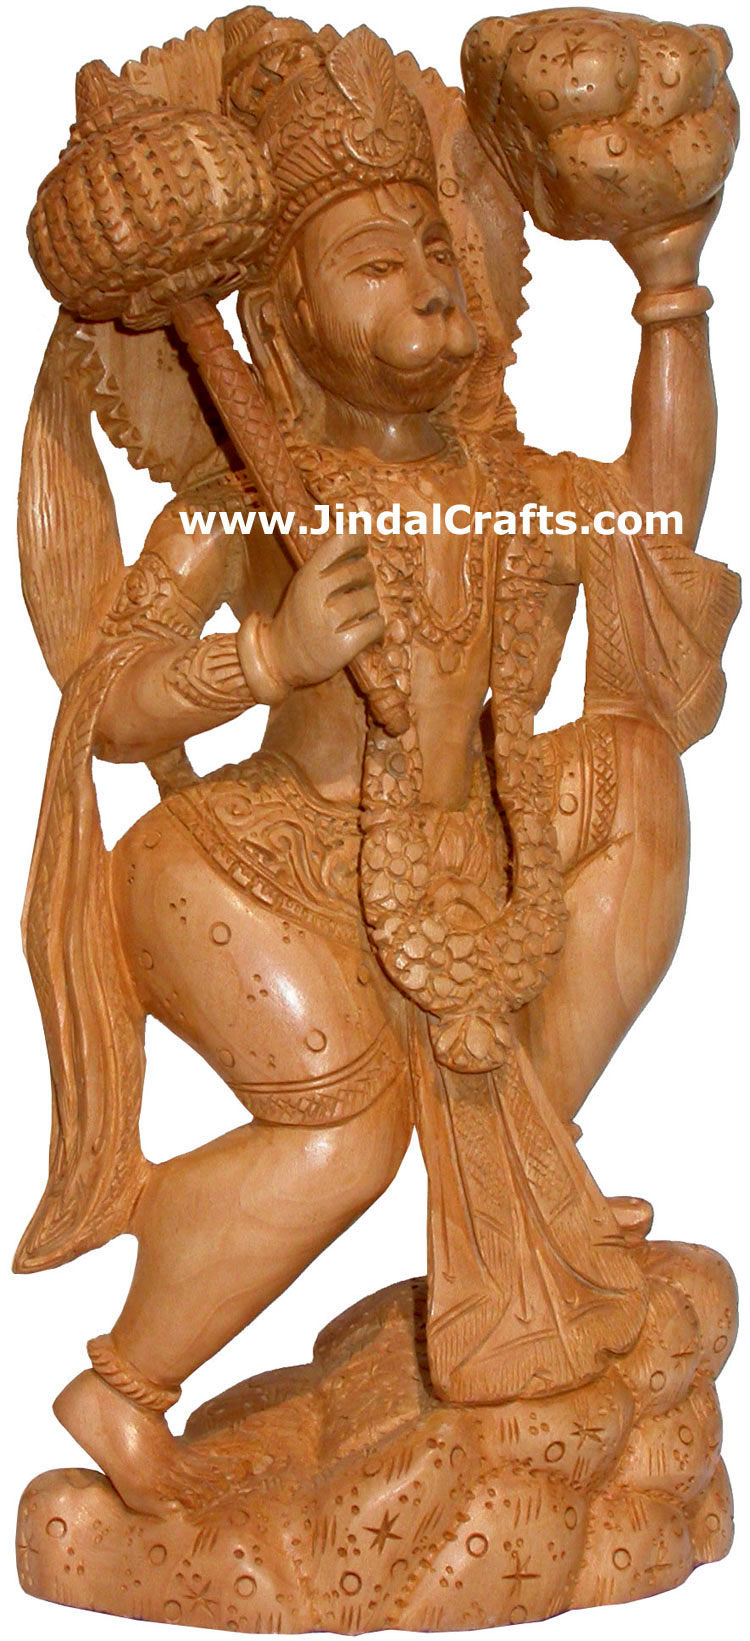 Hand Carved Wooden Hanumaan Figure Indian Art